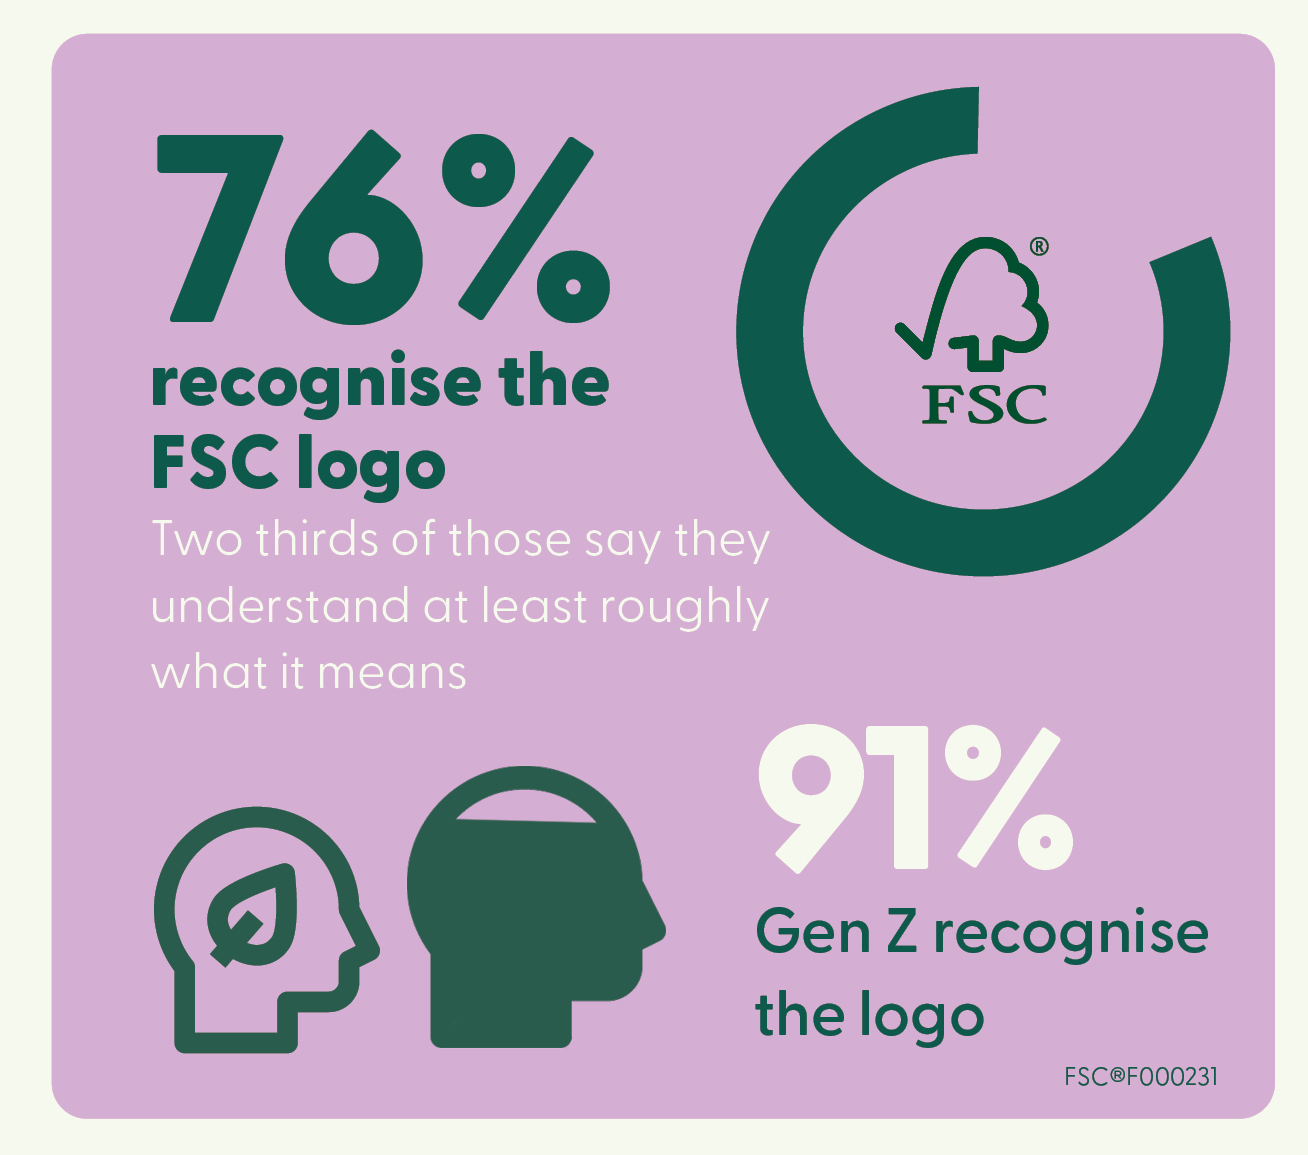 FSC UK survey results 2